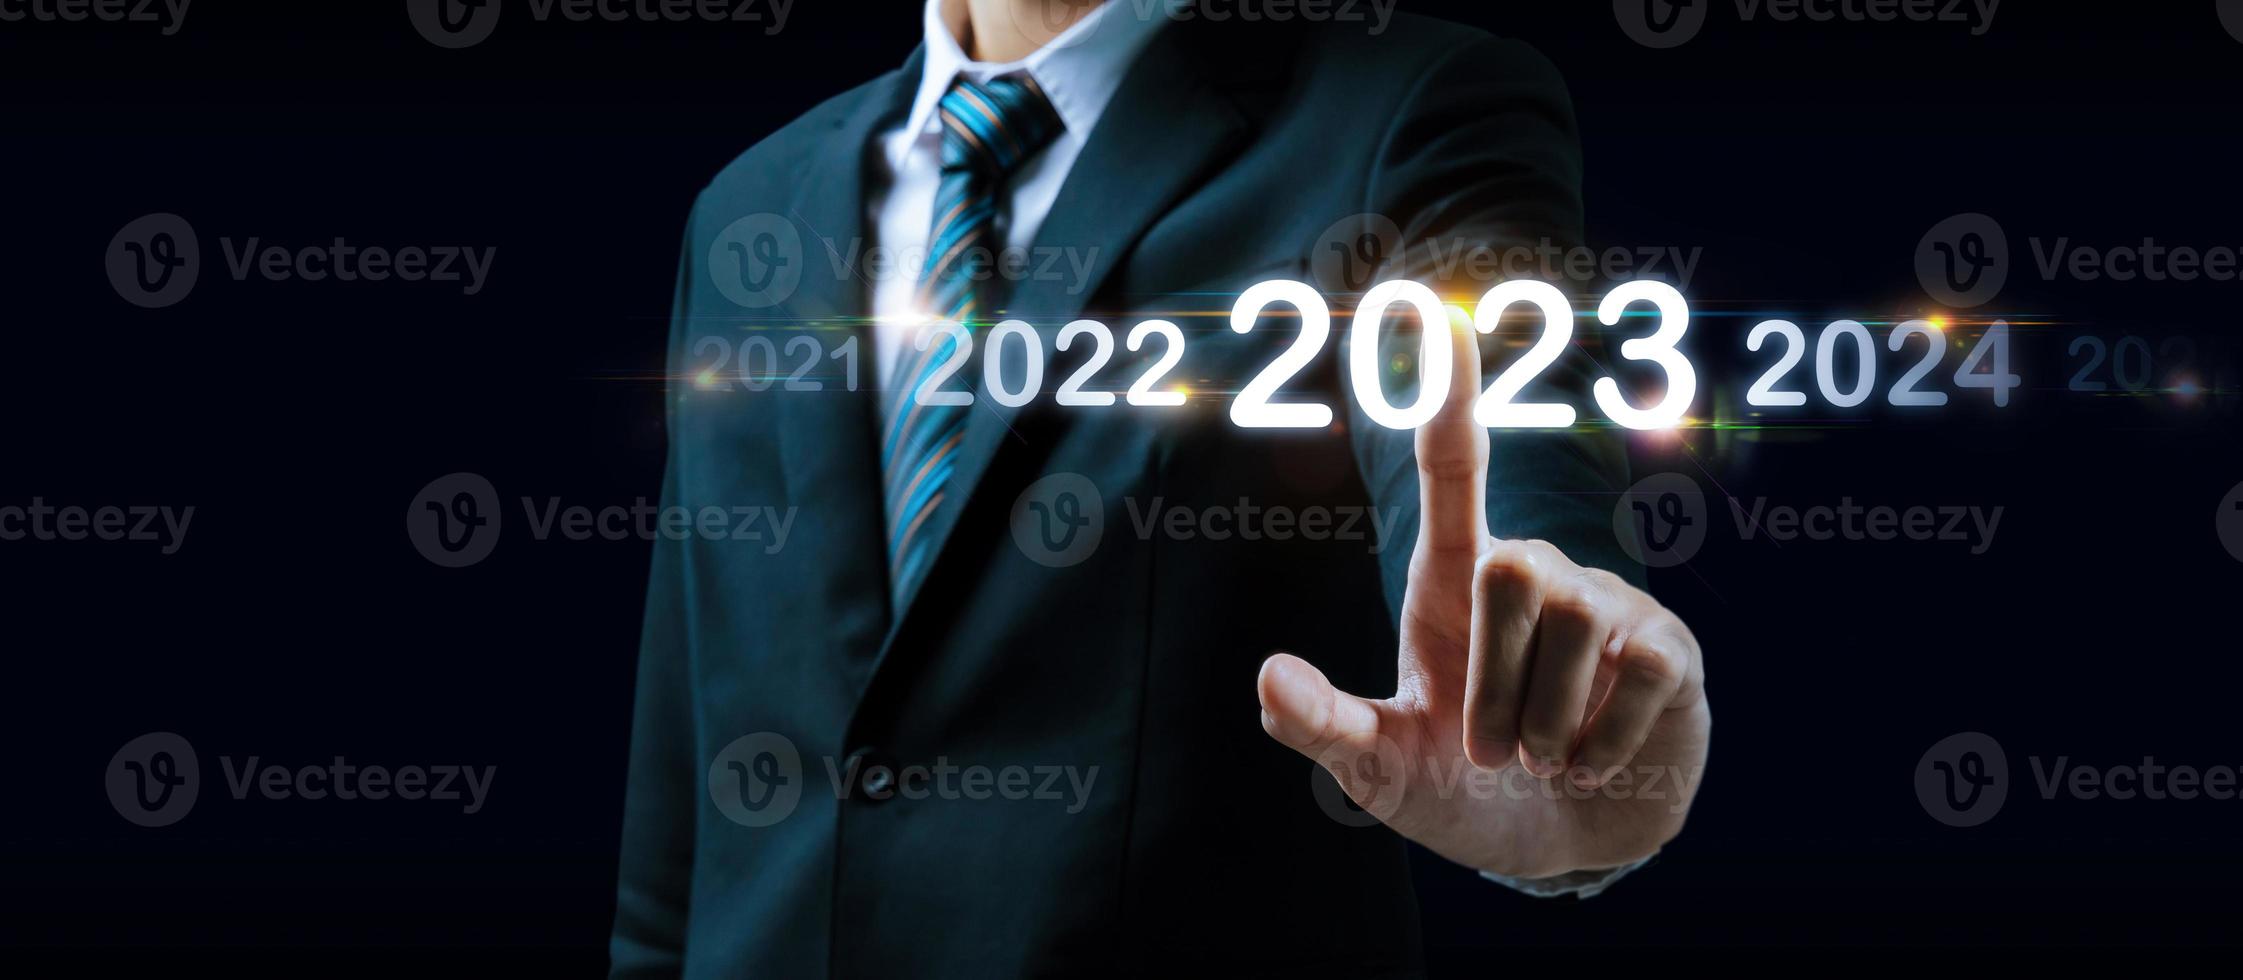 2023. mão de empresário tocando e apontando no ano de 2023 com tela virtual em fundo escuro, alvo de meta, mudança de 2022 para 2023, estratégia, investimento, planejamento de negócios, conceito de feliz ano novo foto